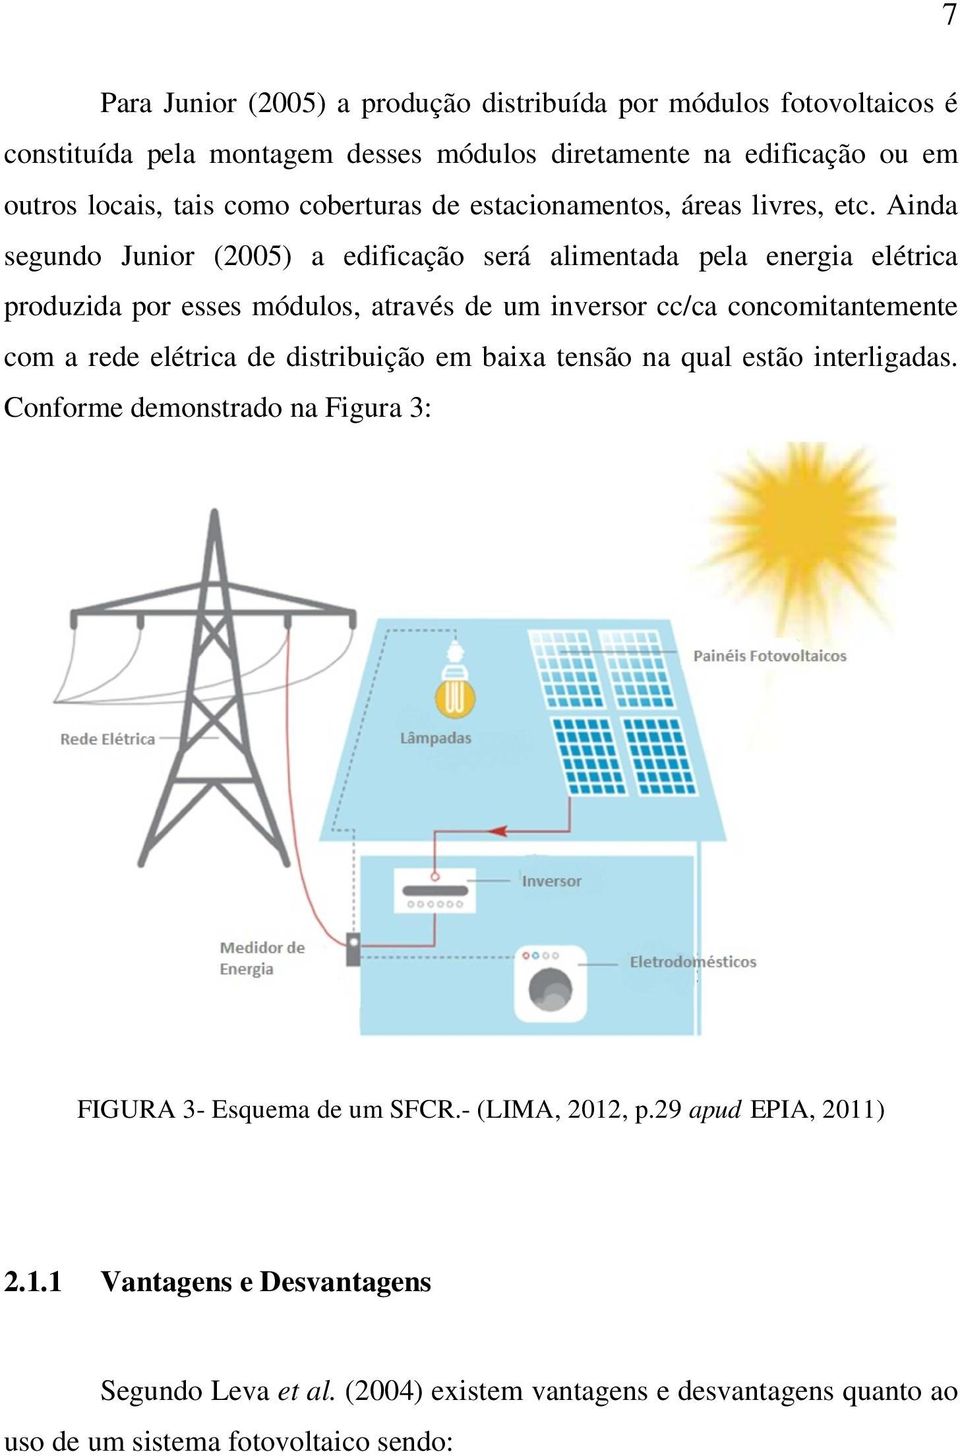 Ainda segundo Junior (2005) a edificação será alimentada pela energia elétrica produzida por esses módulos, através de um inversor cc/ca concomitantemente com a rede